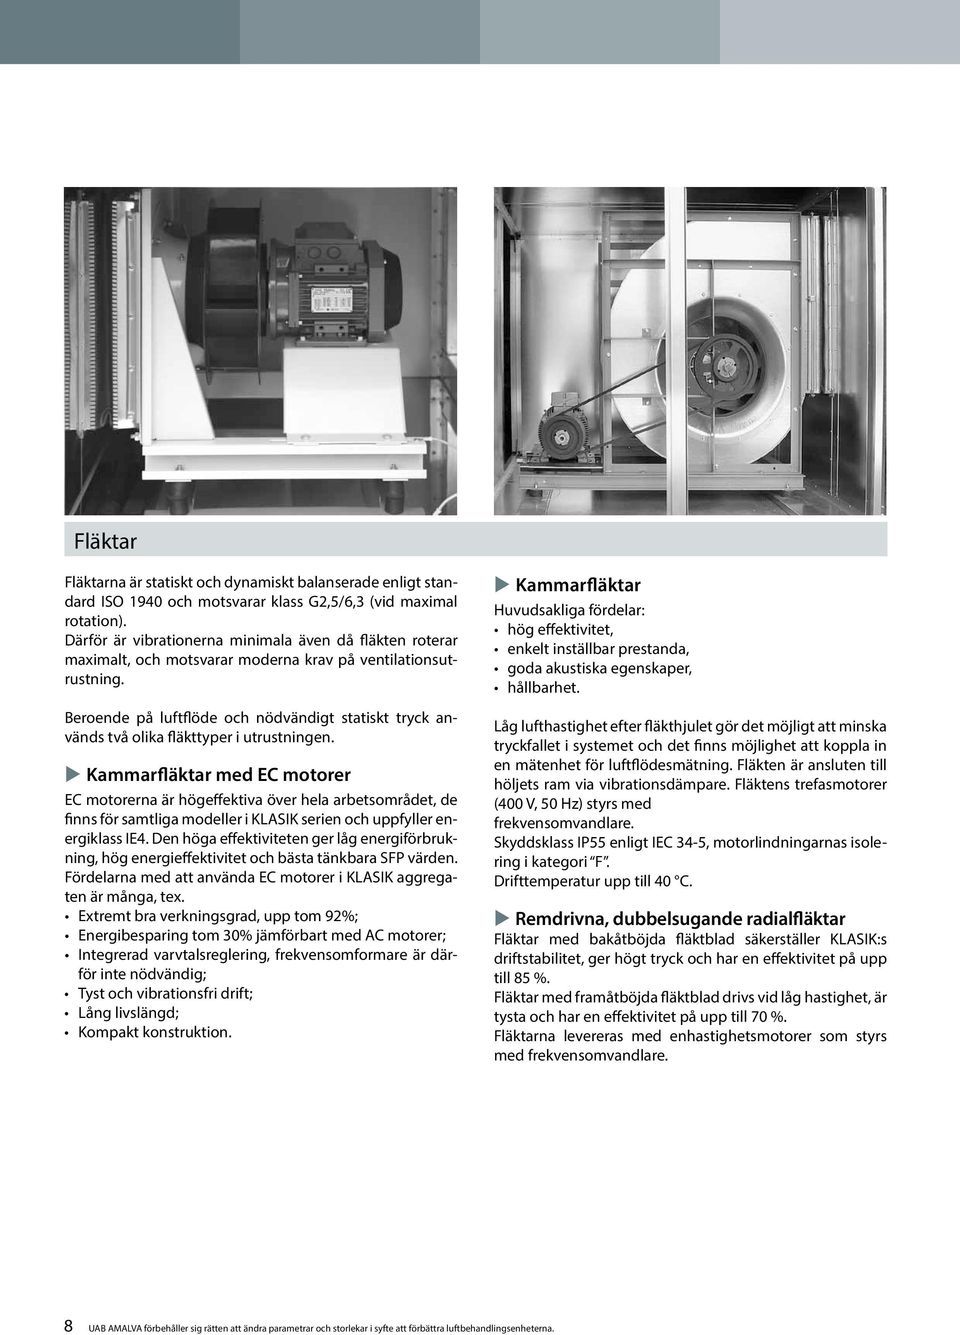 Beroende på luftflöde och nödvändigt statiskt tryck används två olika fläkttyper i utrustningen.